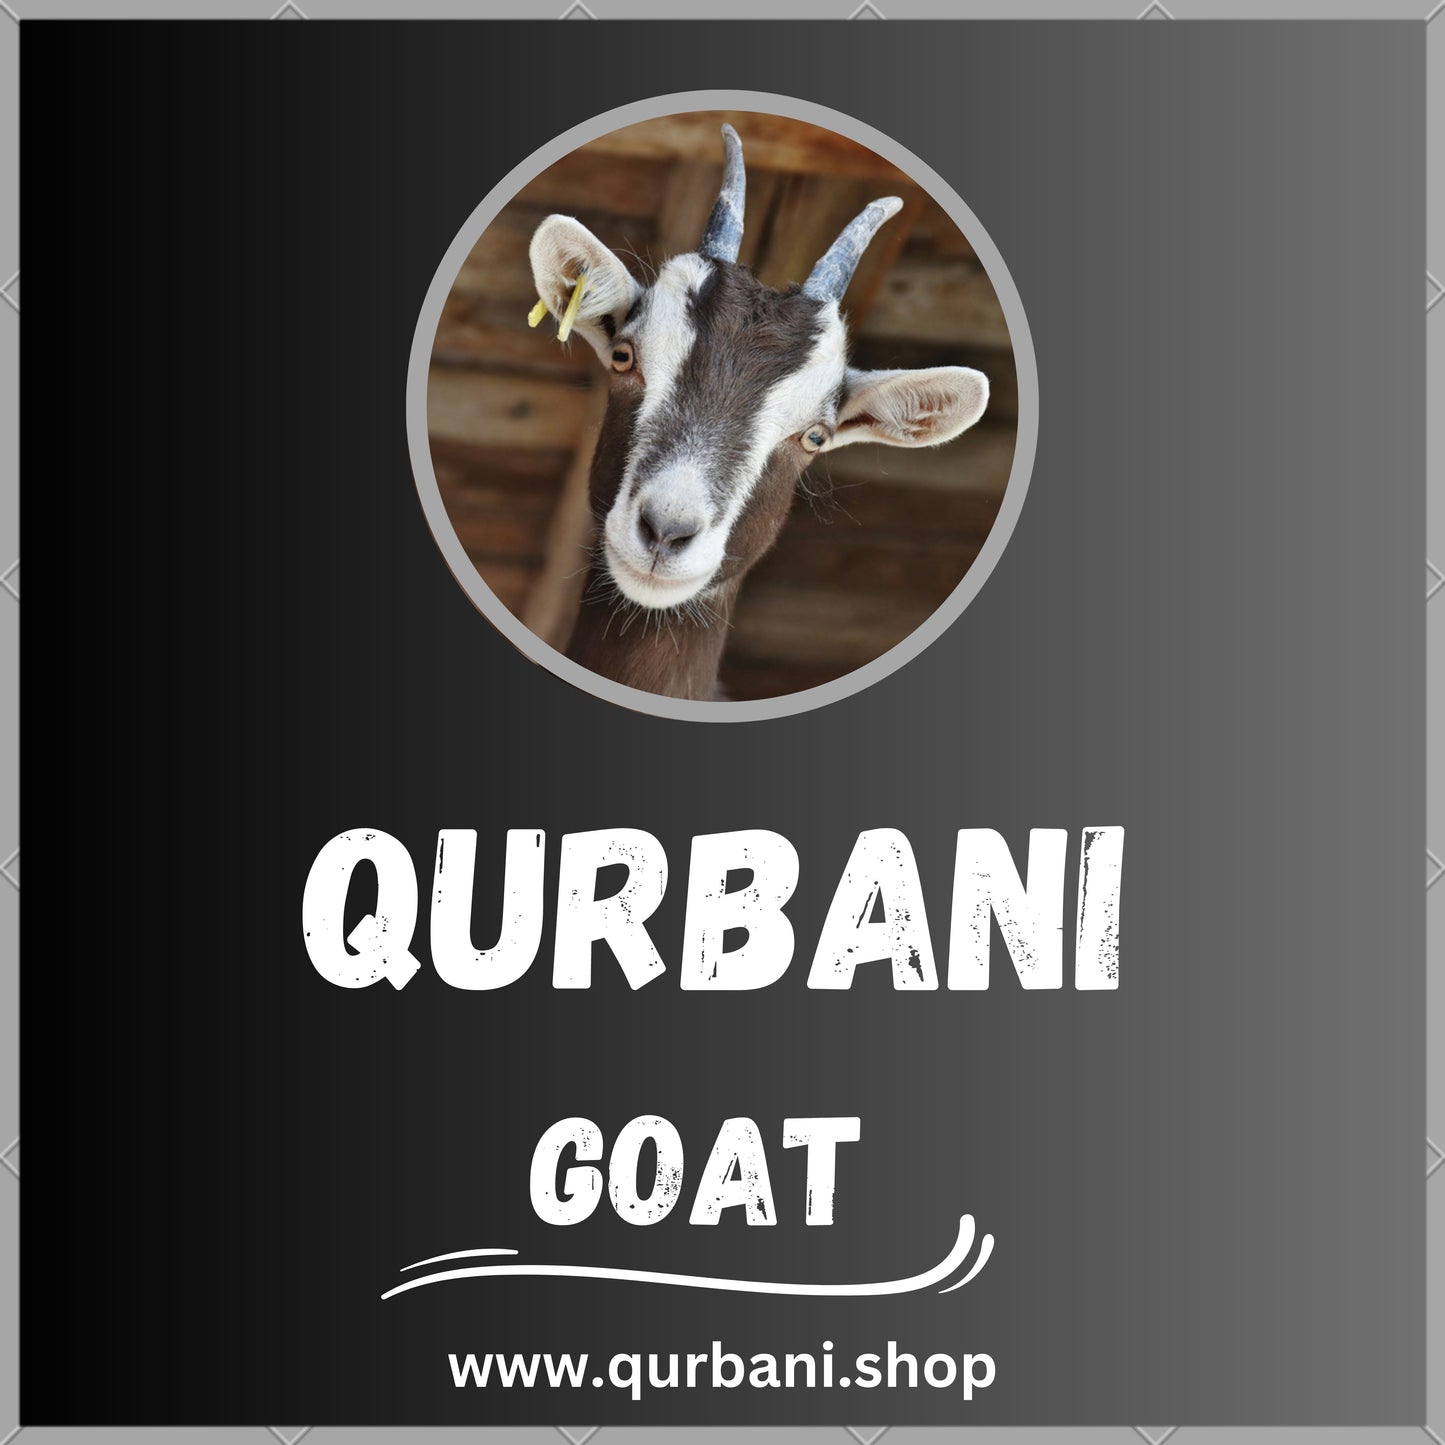 Perform Qurbani in Dallas - Book Your Eid Sacrifice